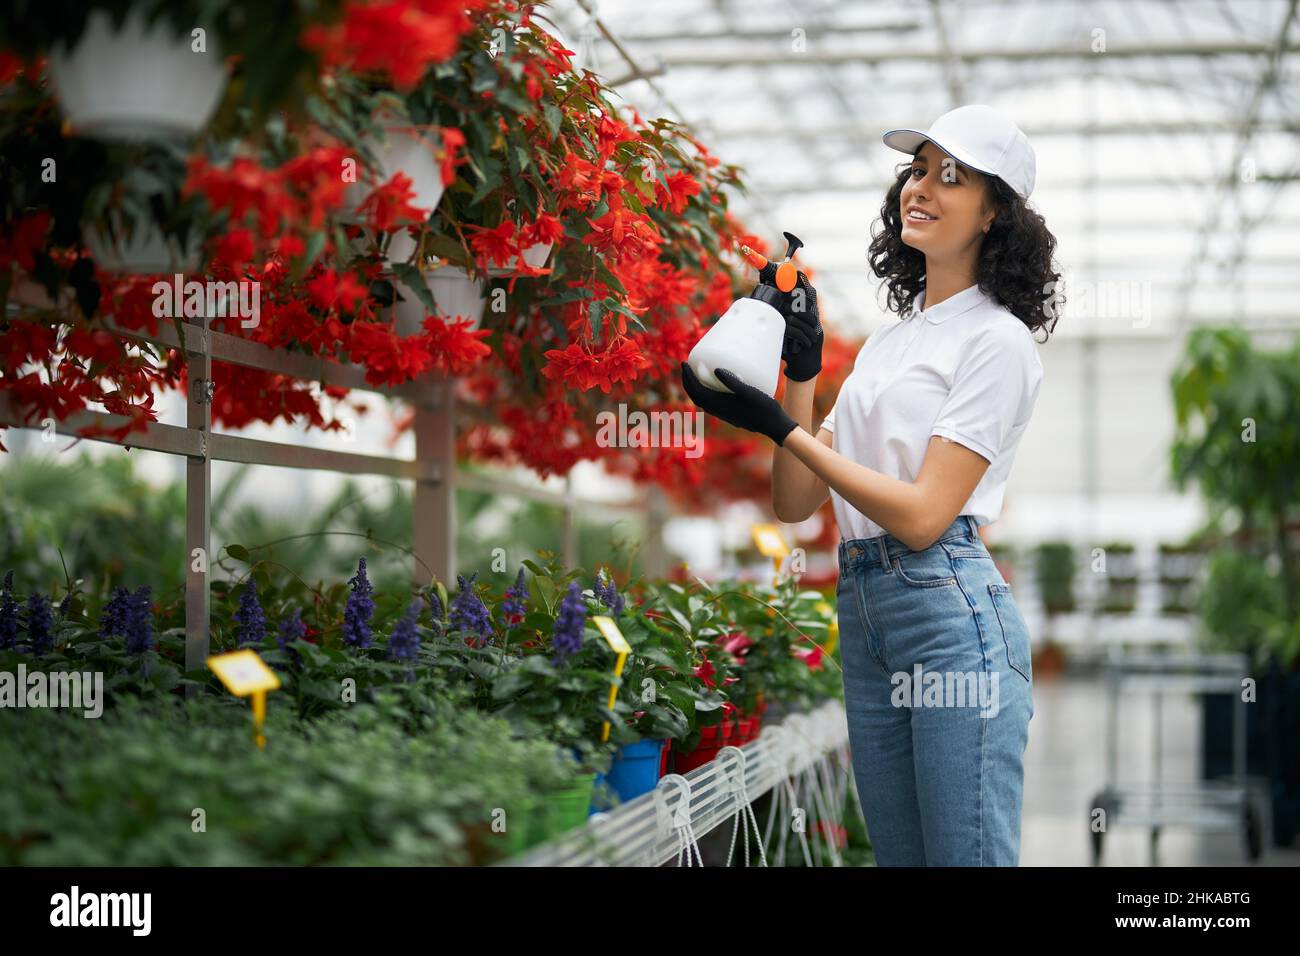 Giardiniere femminile professionale in uniforme utilizzando spray per innaffiare fiori a serra. Giovane donna con capelli ricci scuri coltivando piante colorate. Foto Stock